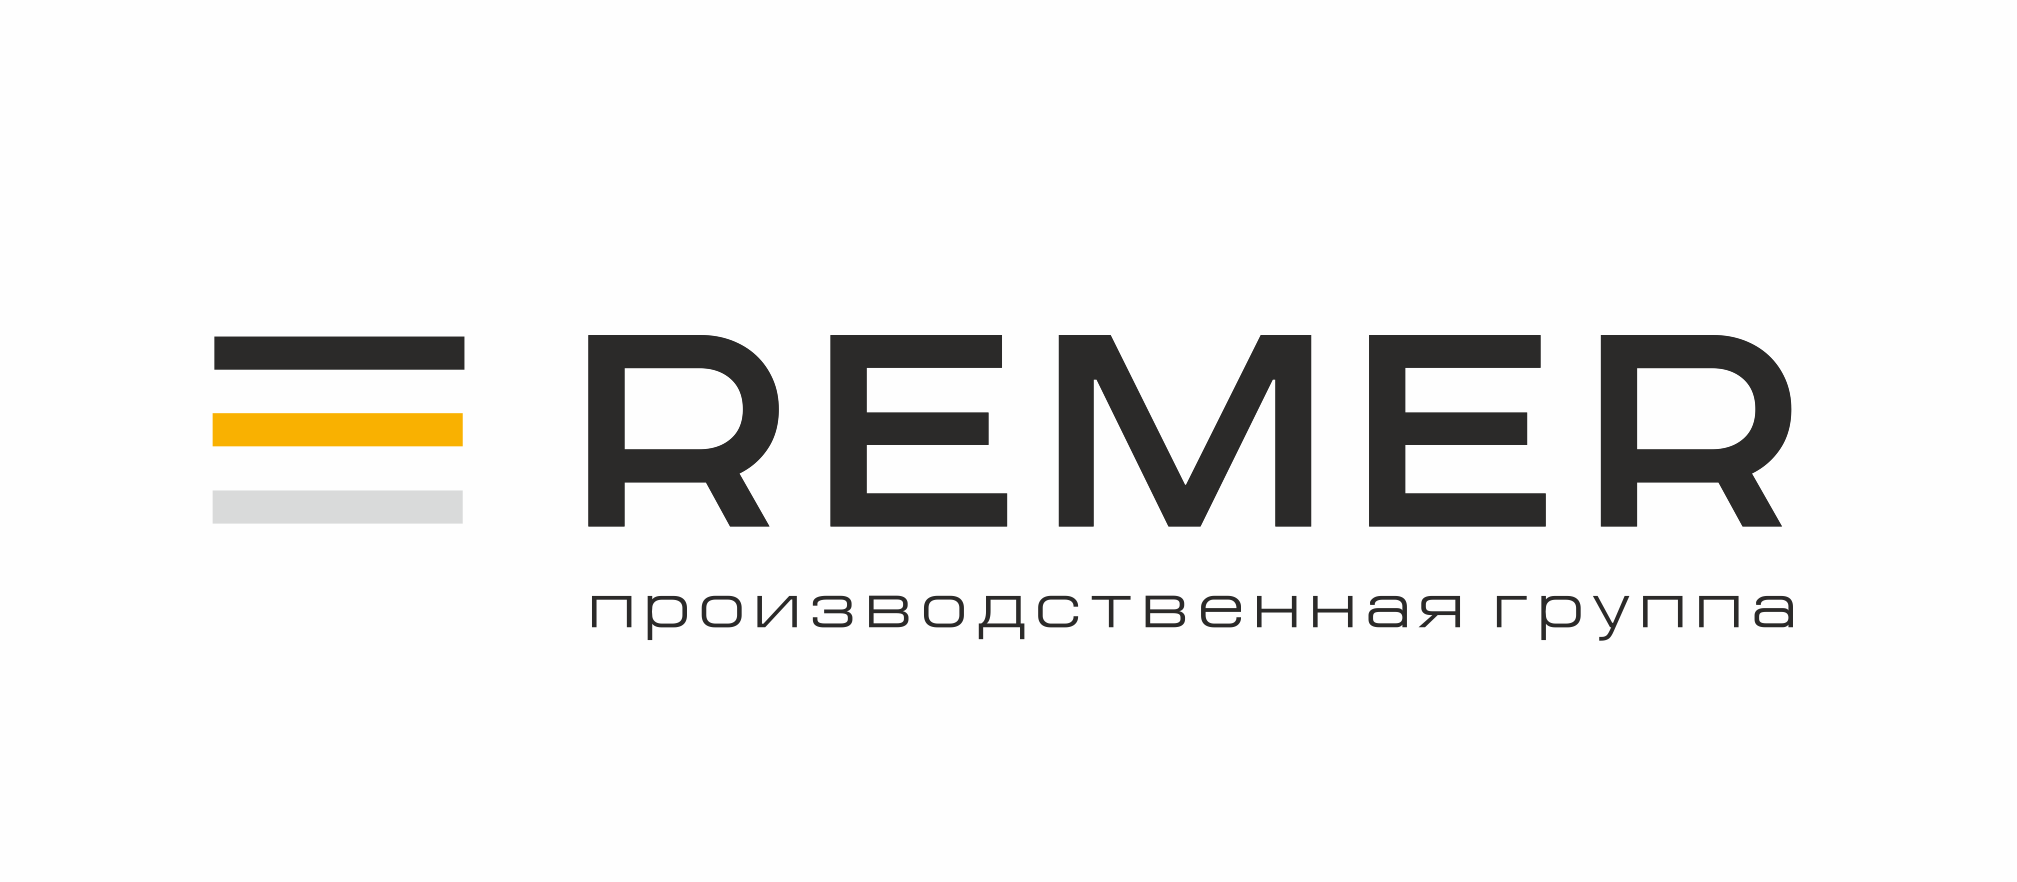 Производственная группа REMER запустила в производство управляемые PDU второго поколения